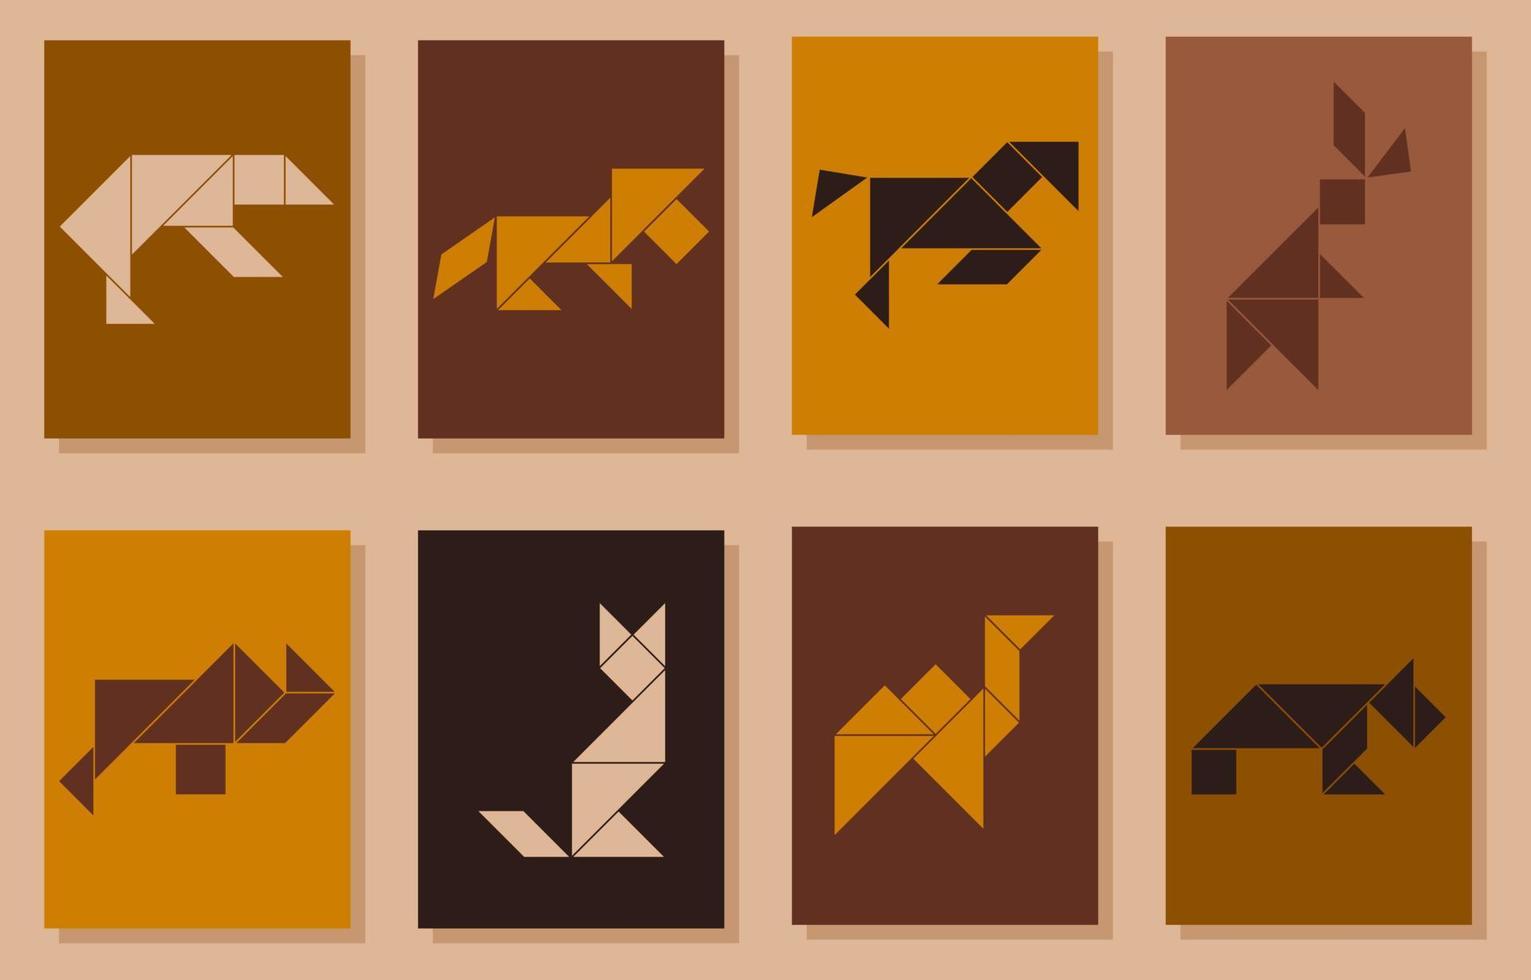 uppsättning av 8 tangram posters med annorlunda djur. modern minimalistisk posters med djur. vektor illustration.